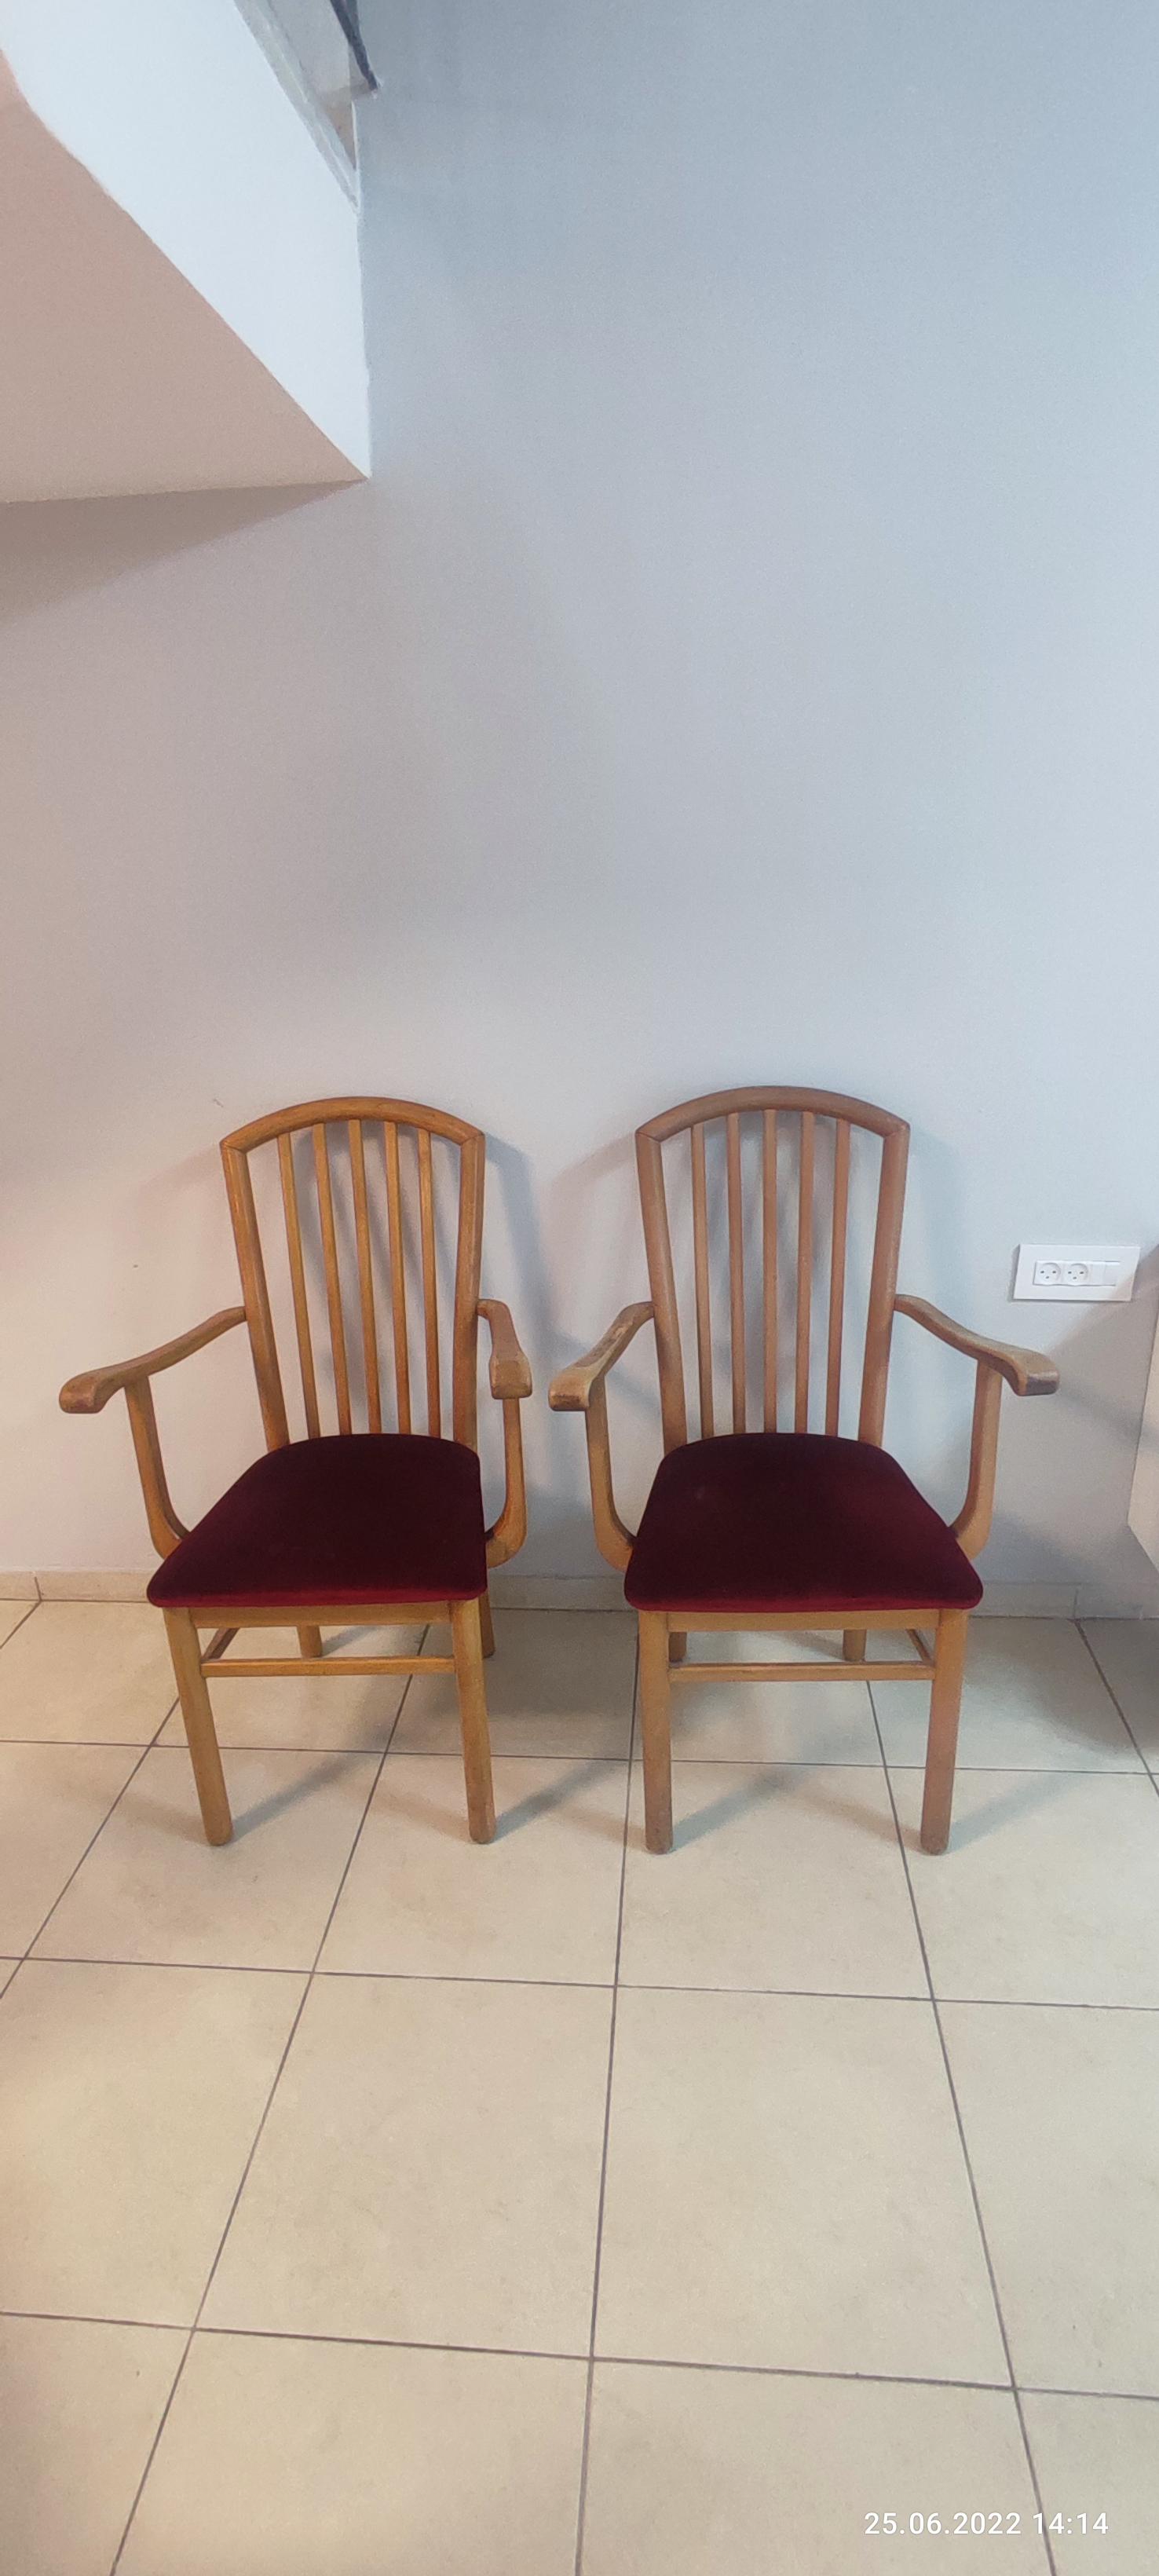 תמונה 1 ,8- כיסאות למכירה בפתח תקווה ריהוט  כיסאות